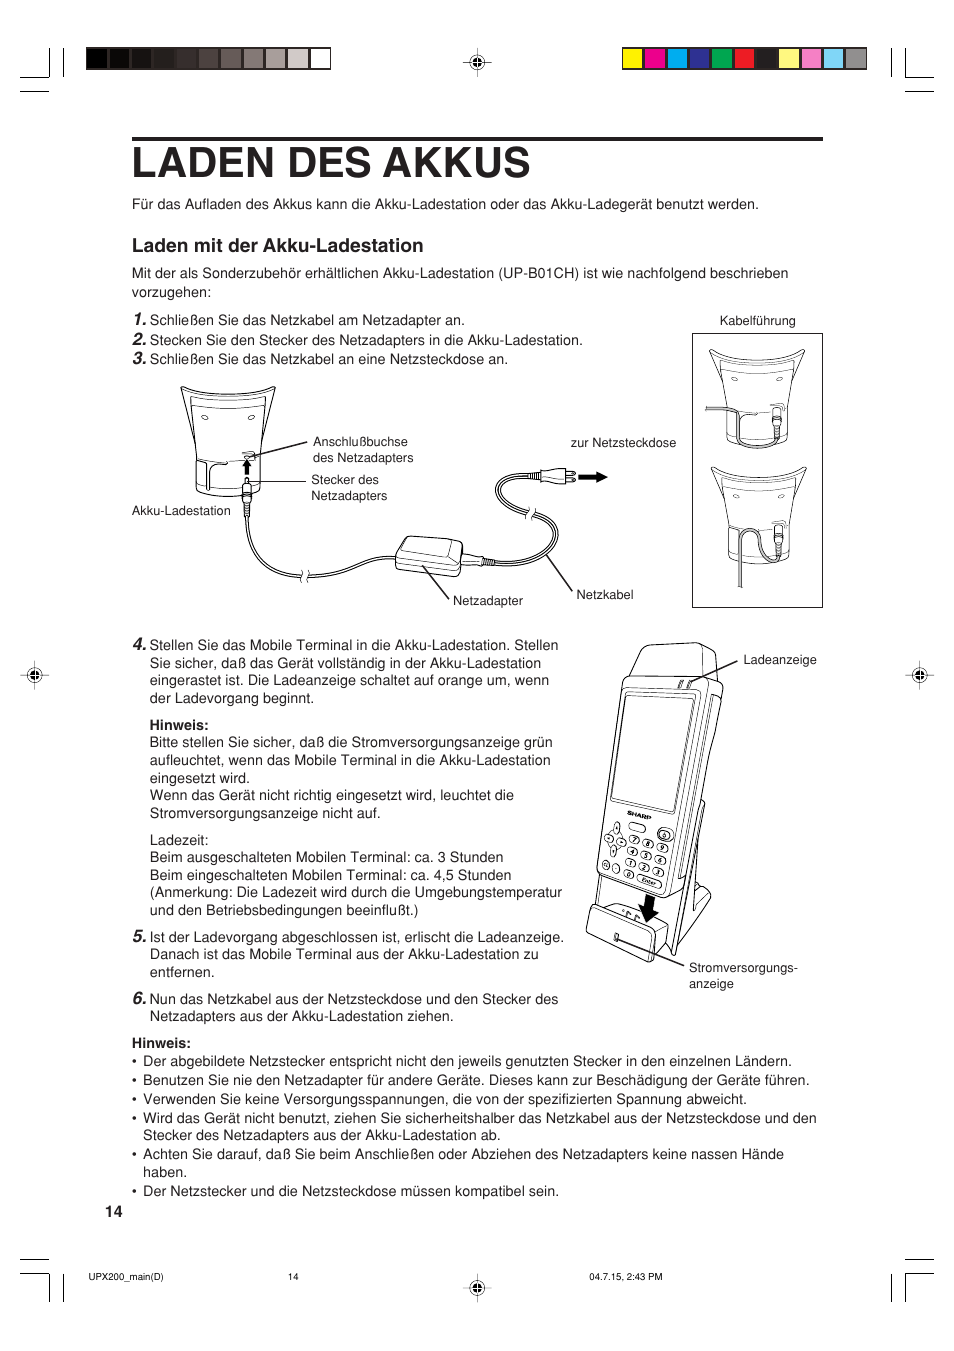 Laden des akkus, Laden mit der akku-ladestation | Sharp UP-X200 User Manual | Page 16 / 48